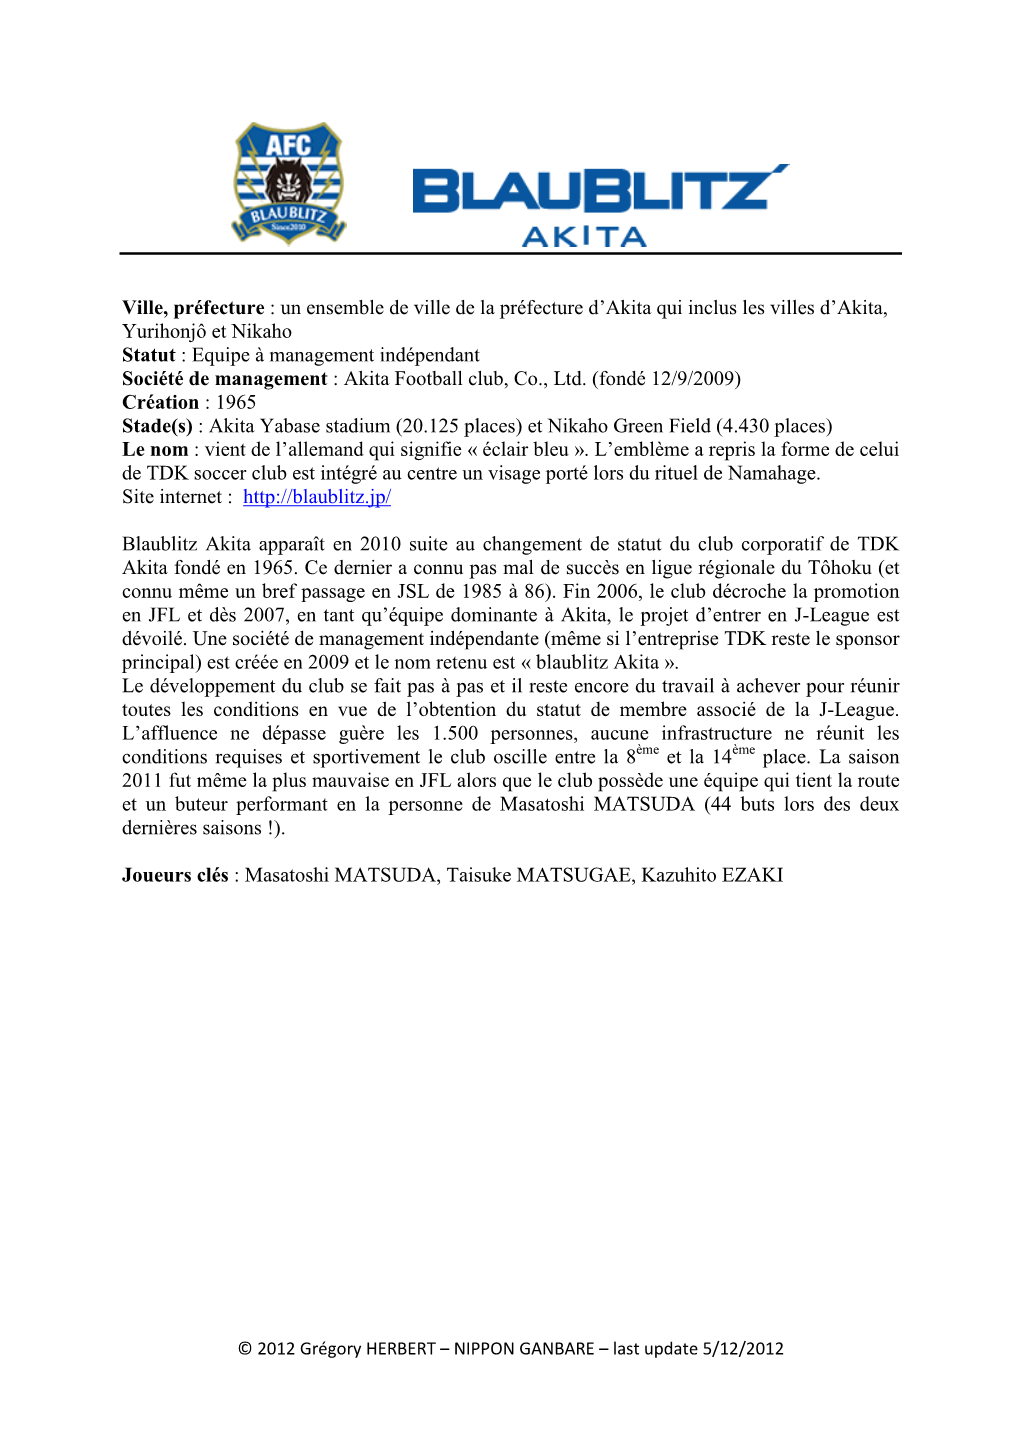 Blaublitz Akita Apparaît En 2010 Suite Au Changement De Statut Du Club Corporatif De TDK Akita Fondé En 1965